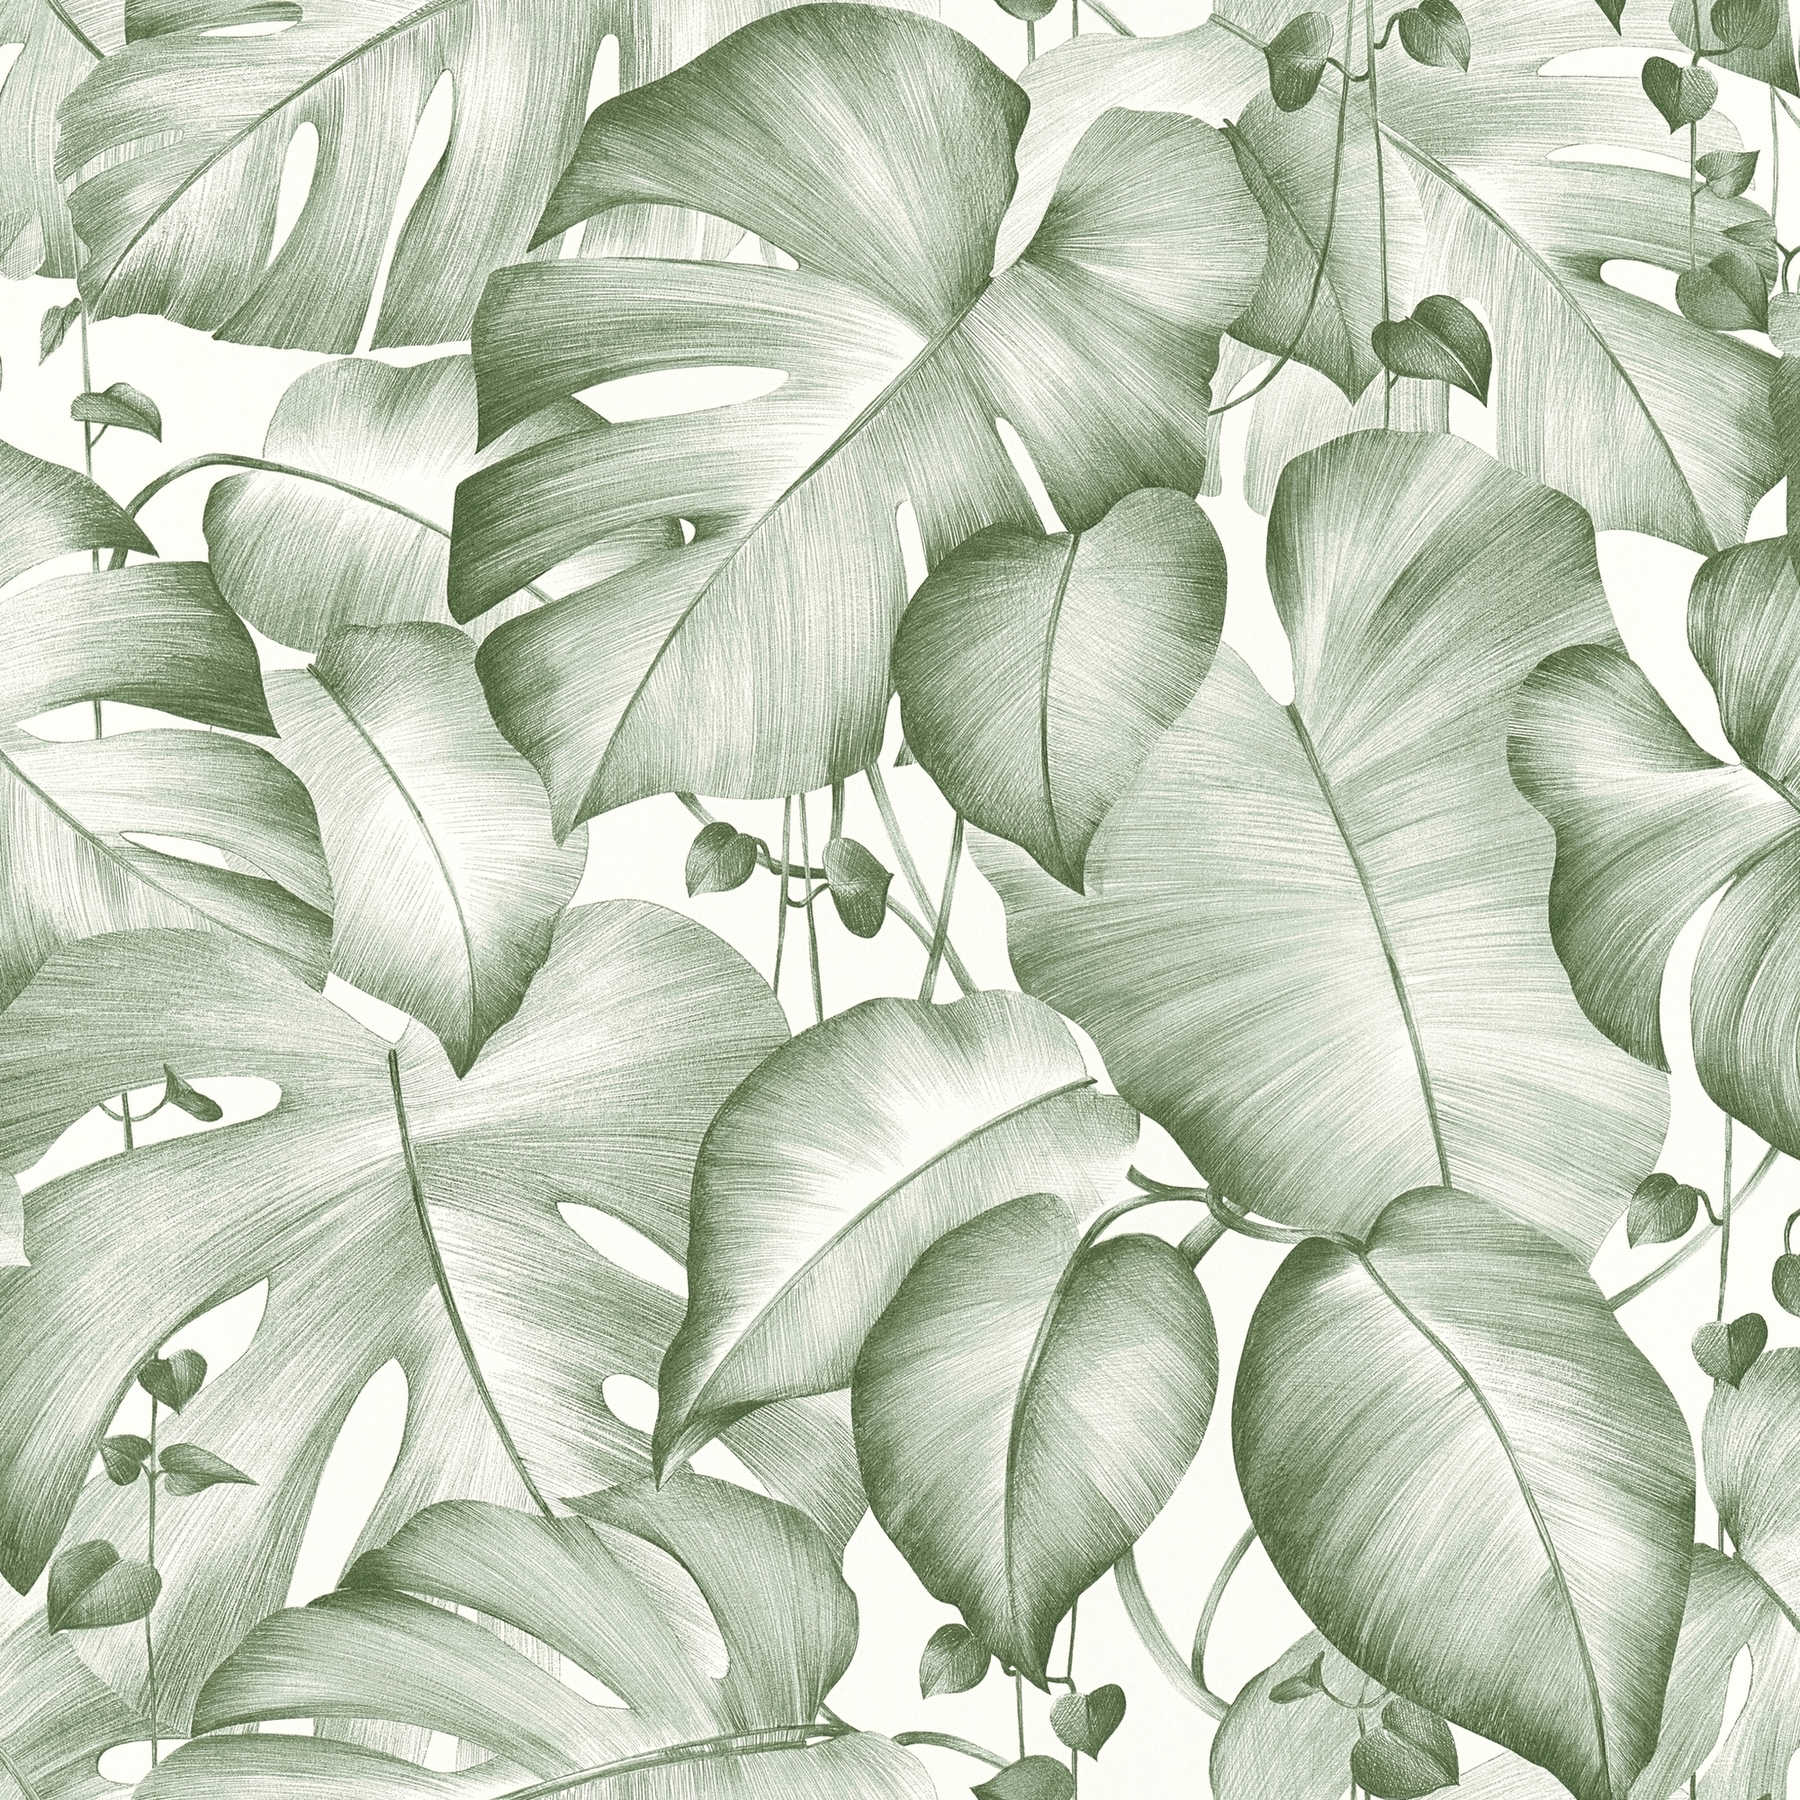             Panneau design autocollant avec des feuilles de monstera - vert, blanc
        